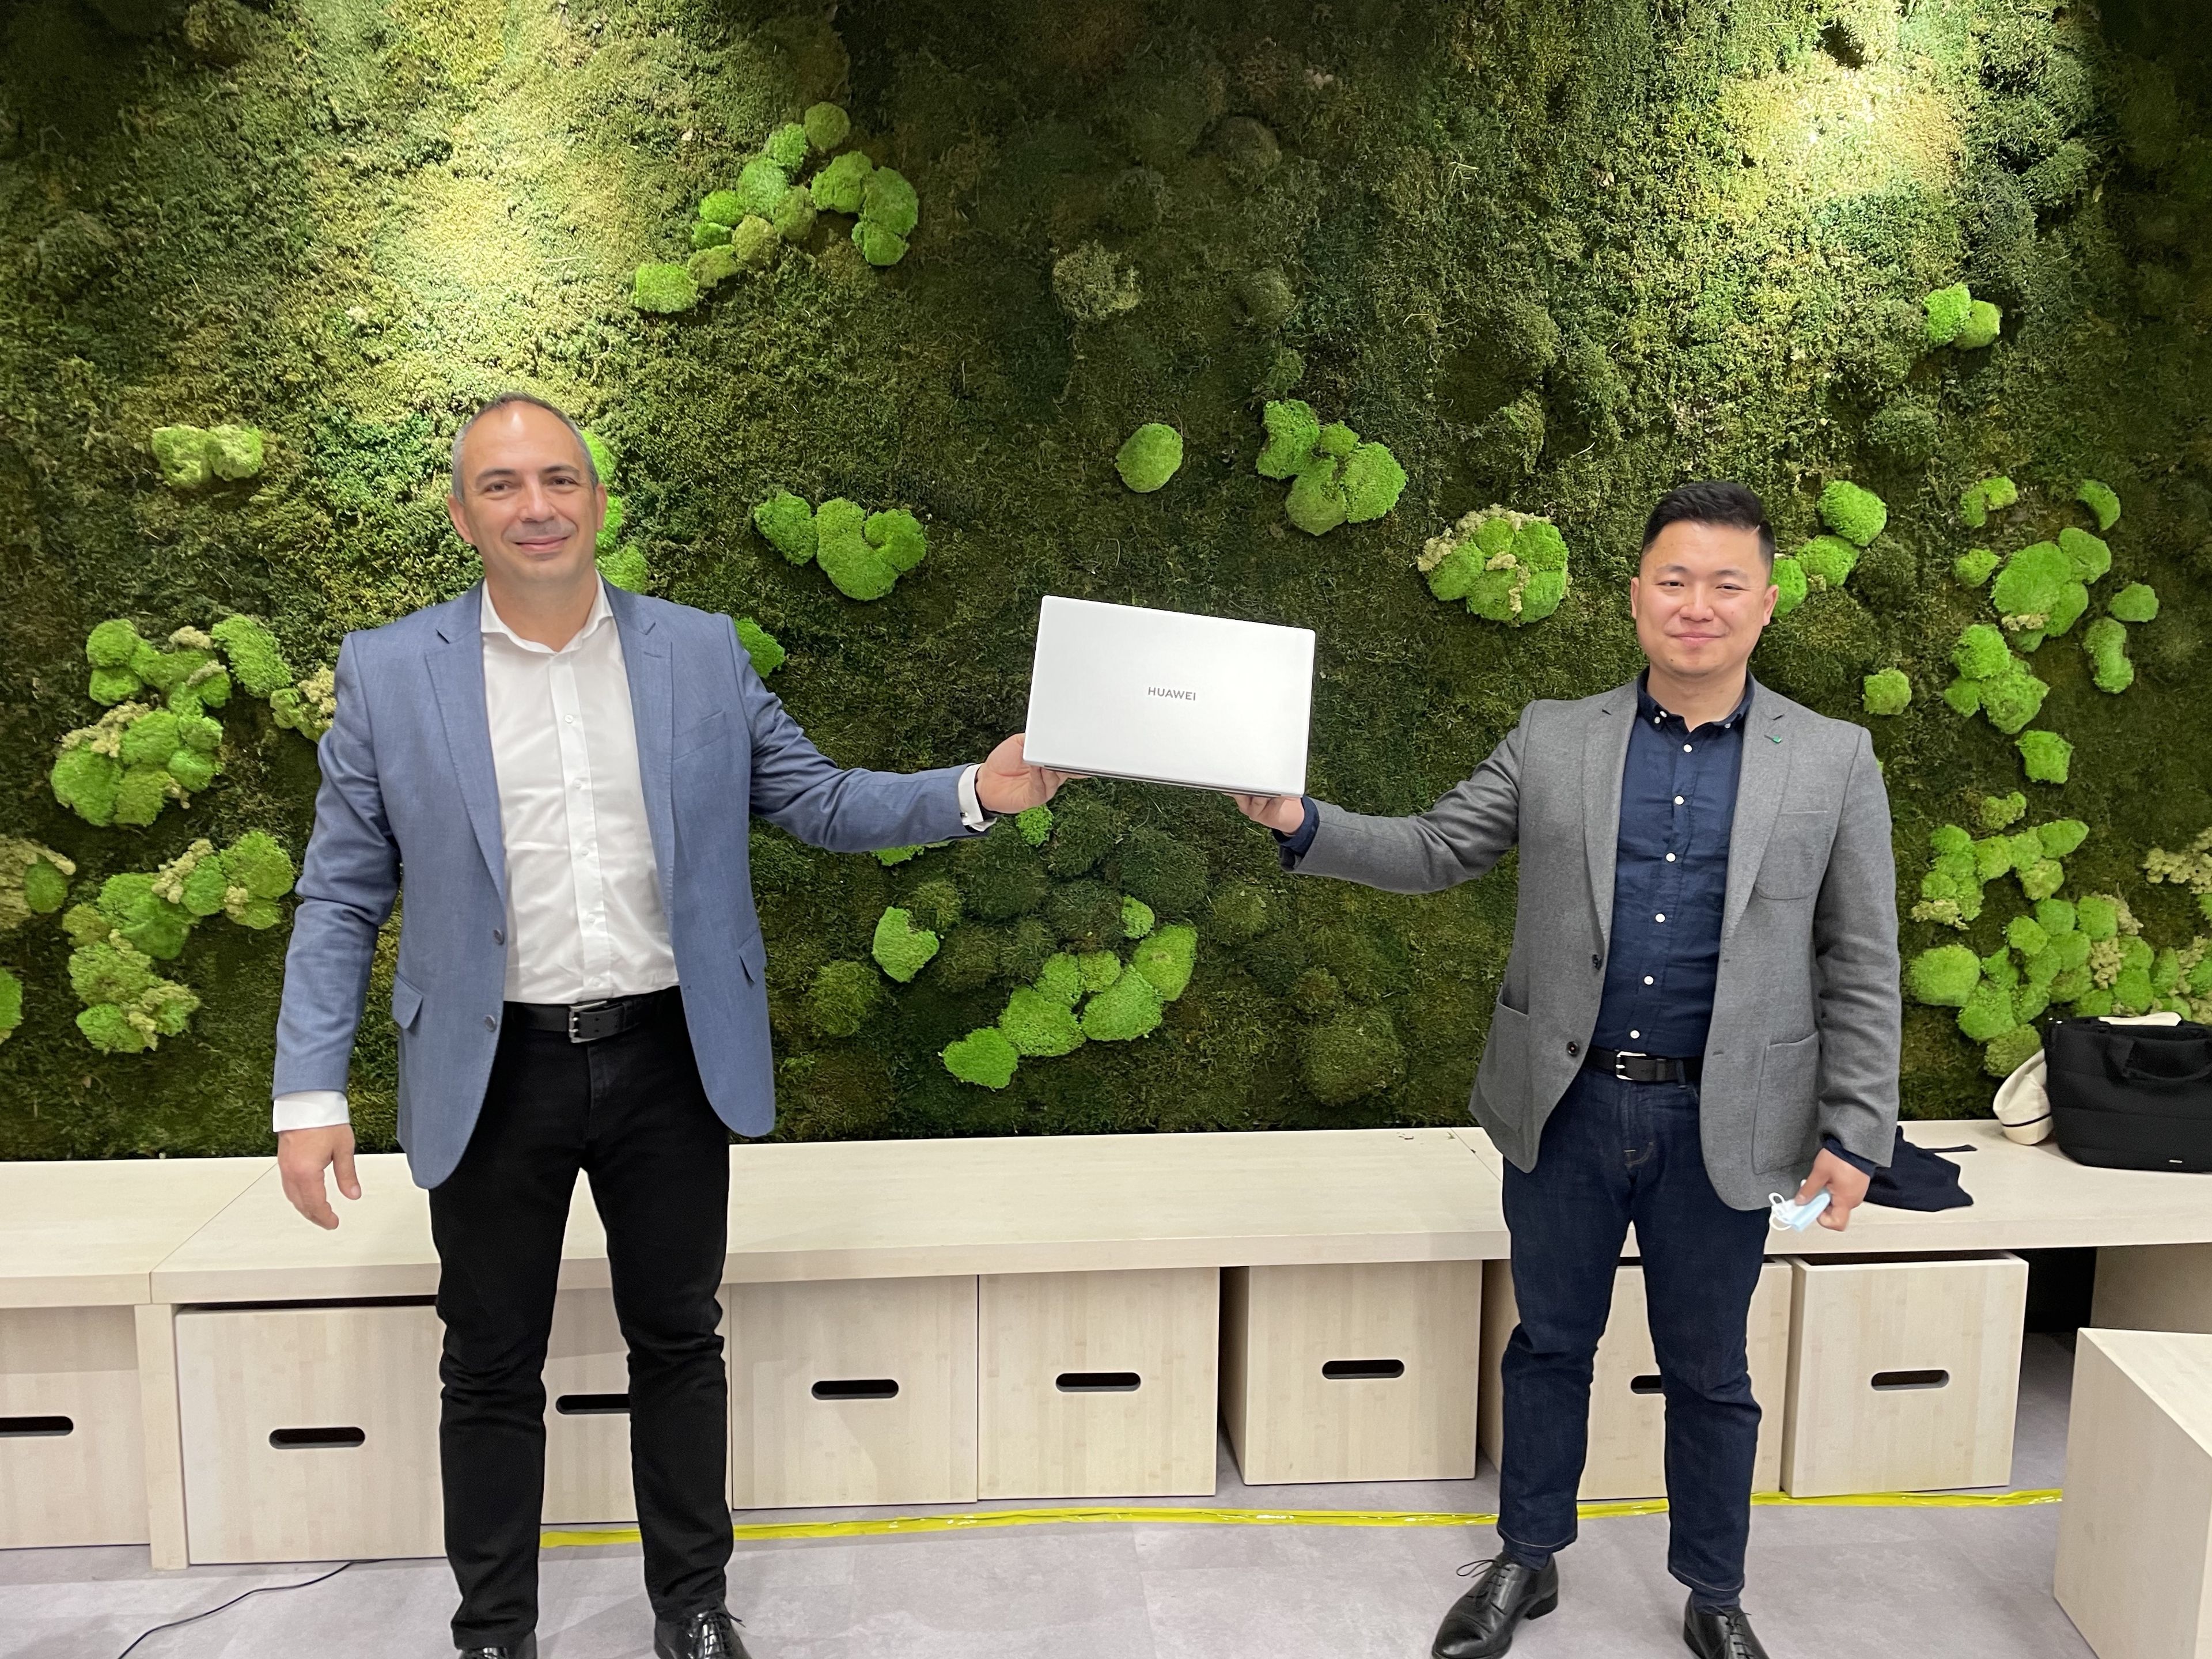 De izquierda a derecha: Jesús Sánchez, director de Consumo para el Suroeste de Europa de Intel, y Jorge Cui Liu, jefe de Producto de Dispositivos Inteligentes de Huawei Consumo en España.